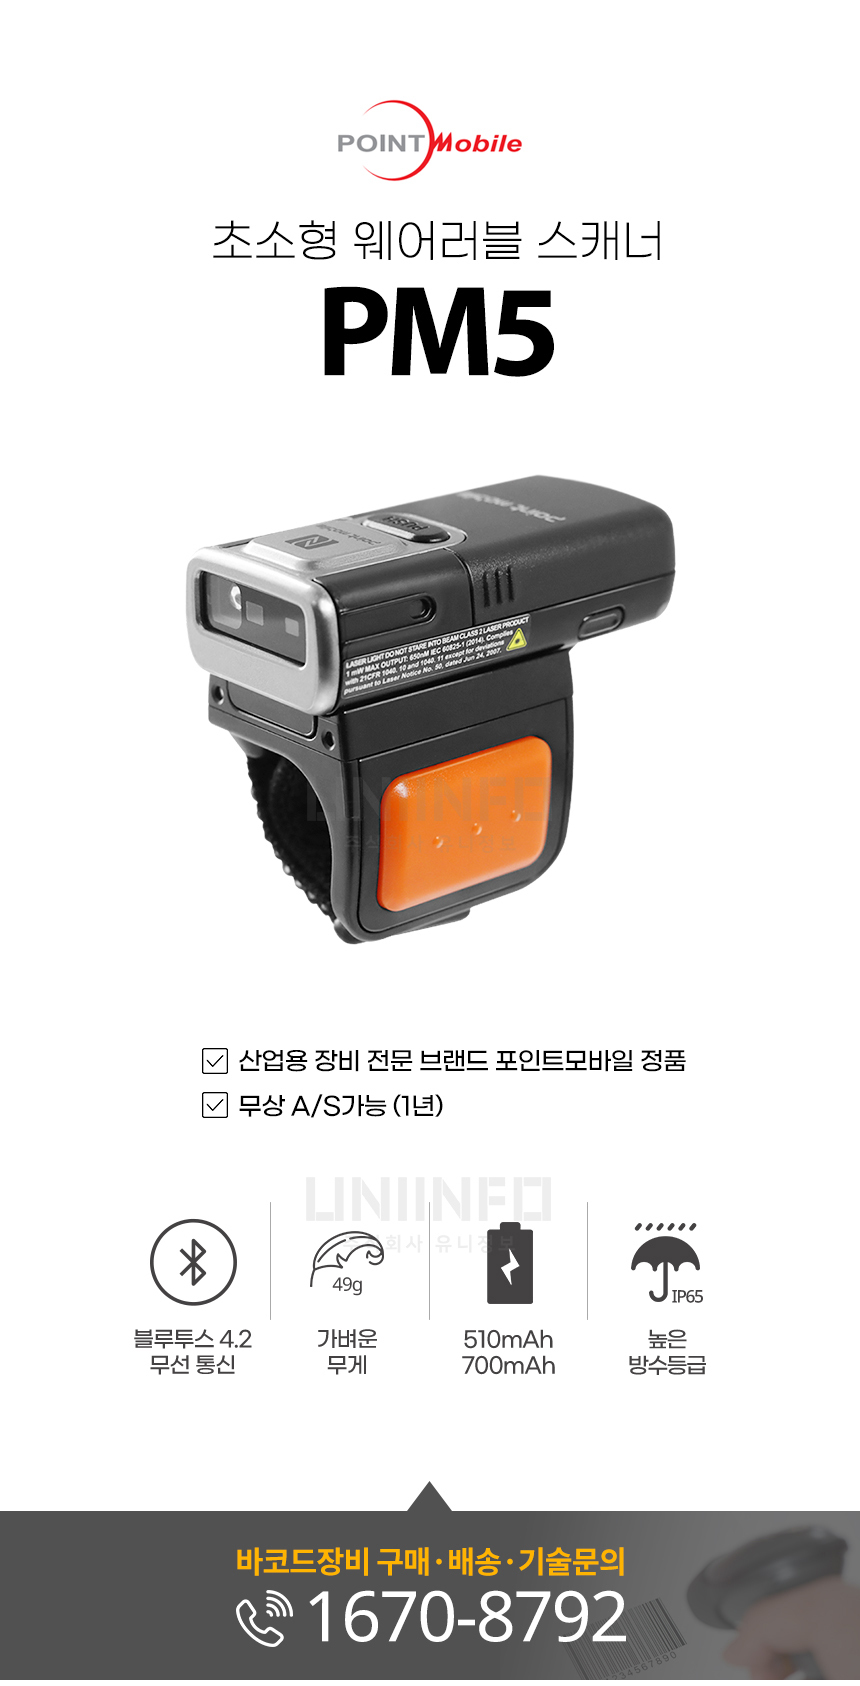 포인트모바일 초소형 웨어러블 스캐너 pm5 산업용 장비 전문 브랜드 정품 무상 as 가능 가벼운 무게 49g